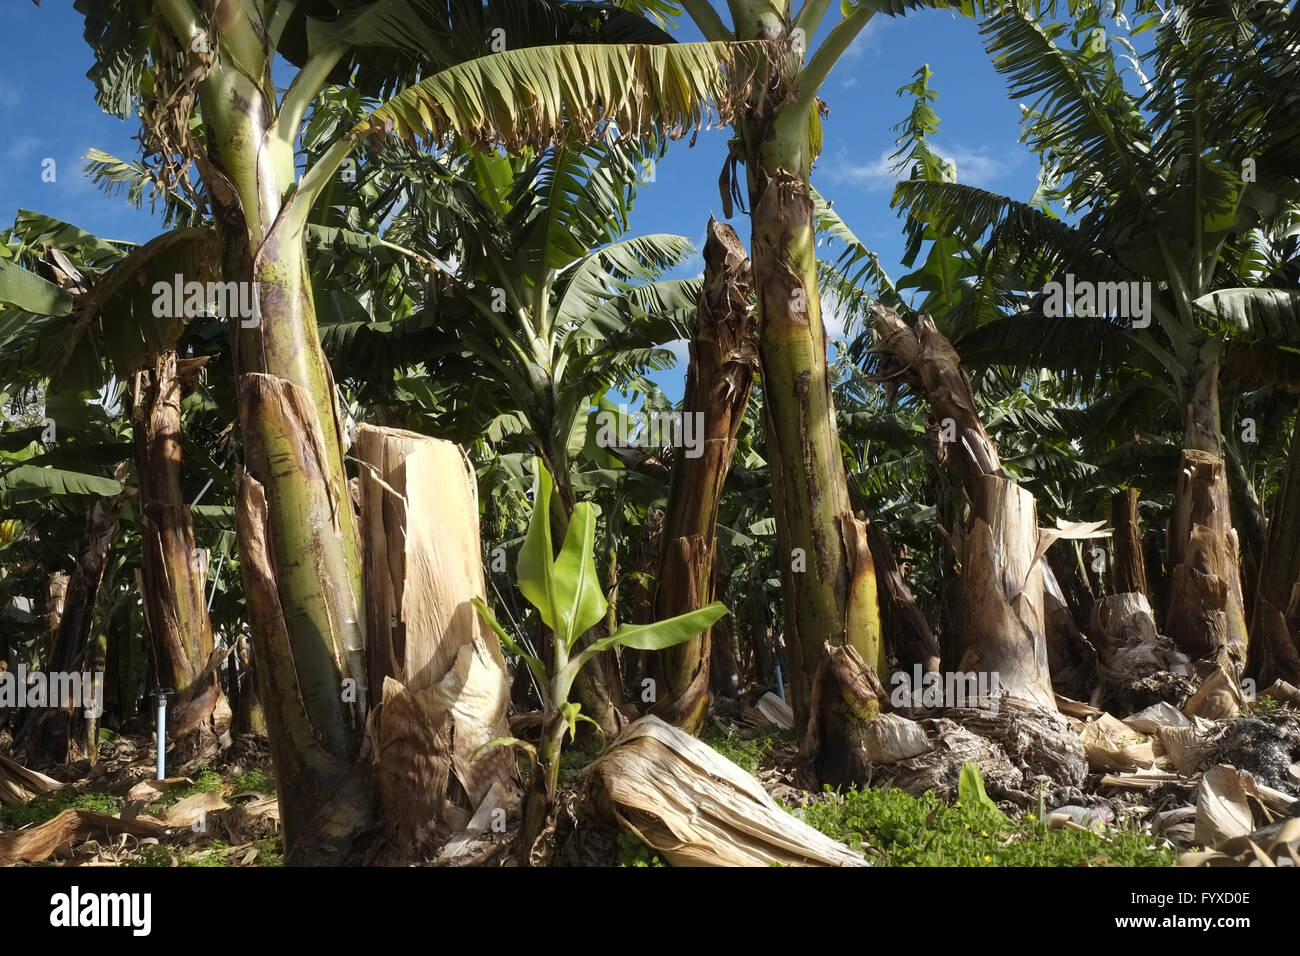 Banana plantation, La Palma Stock Photo